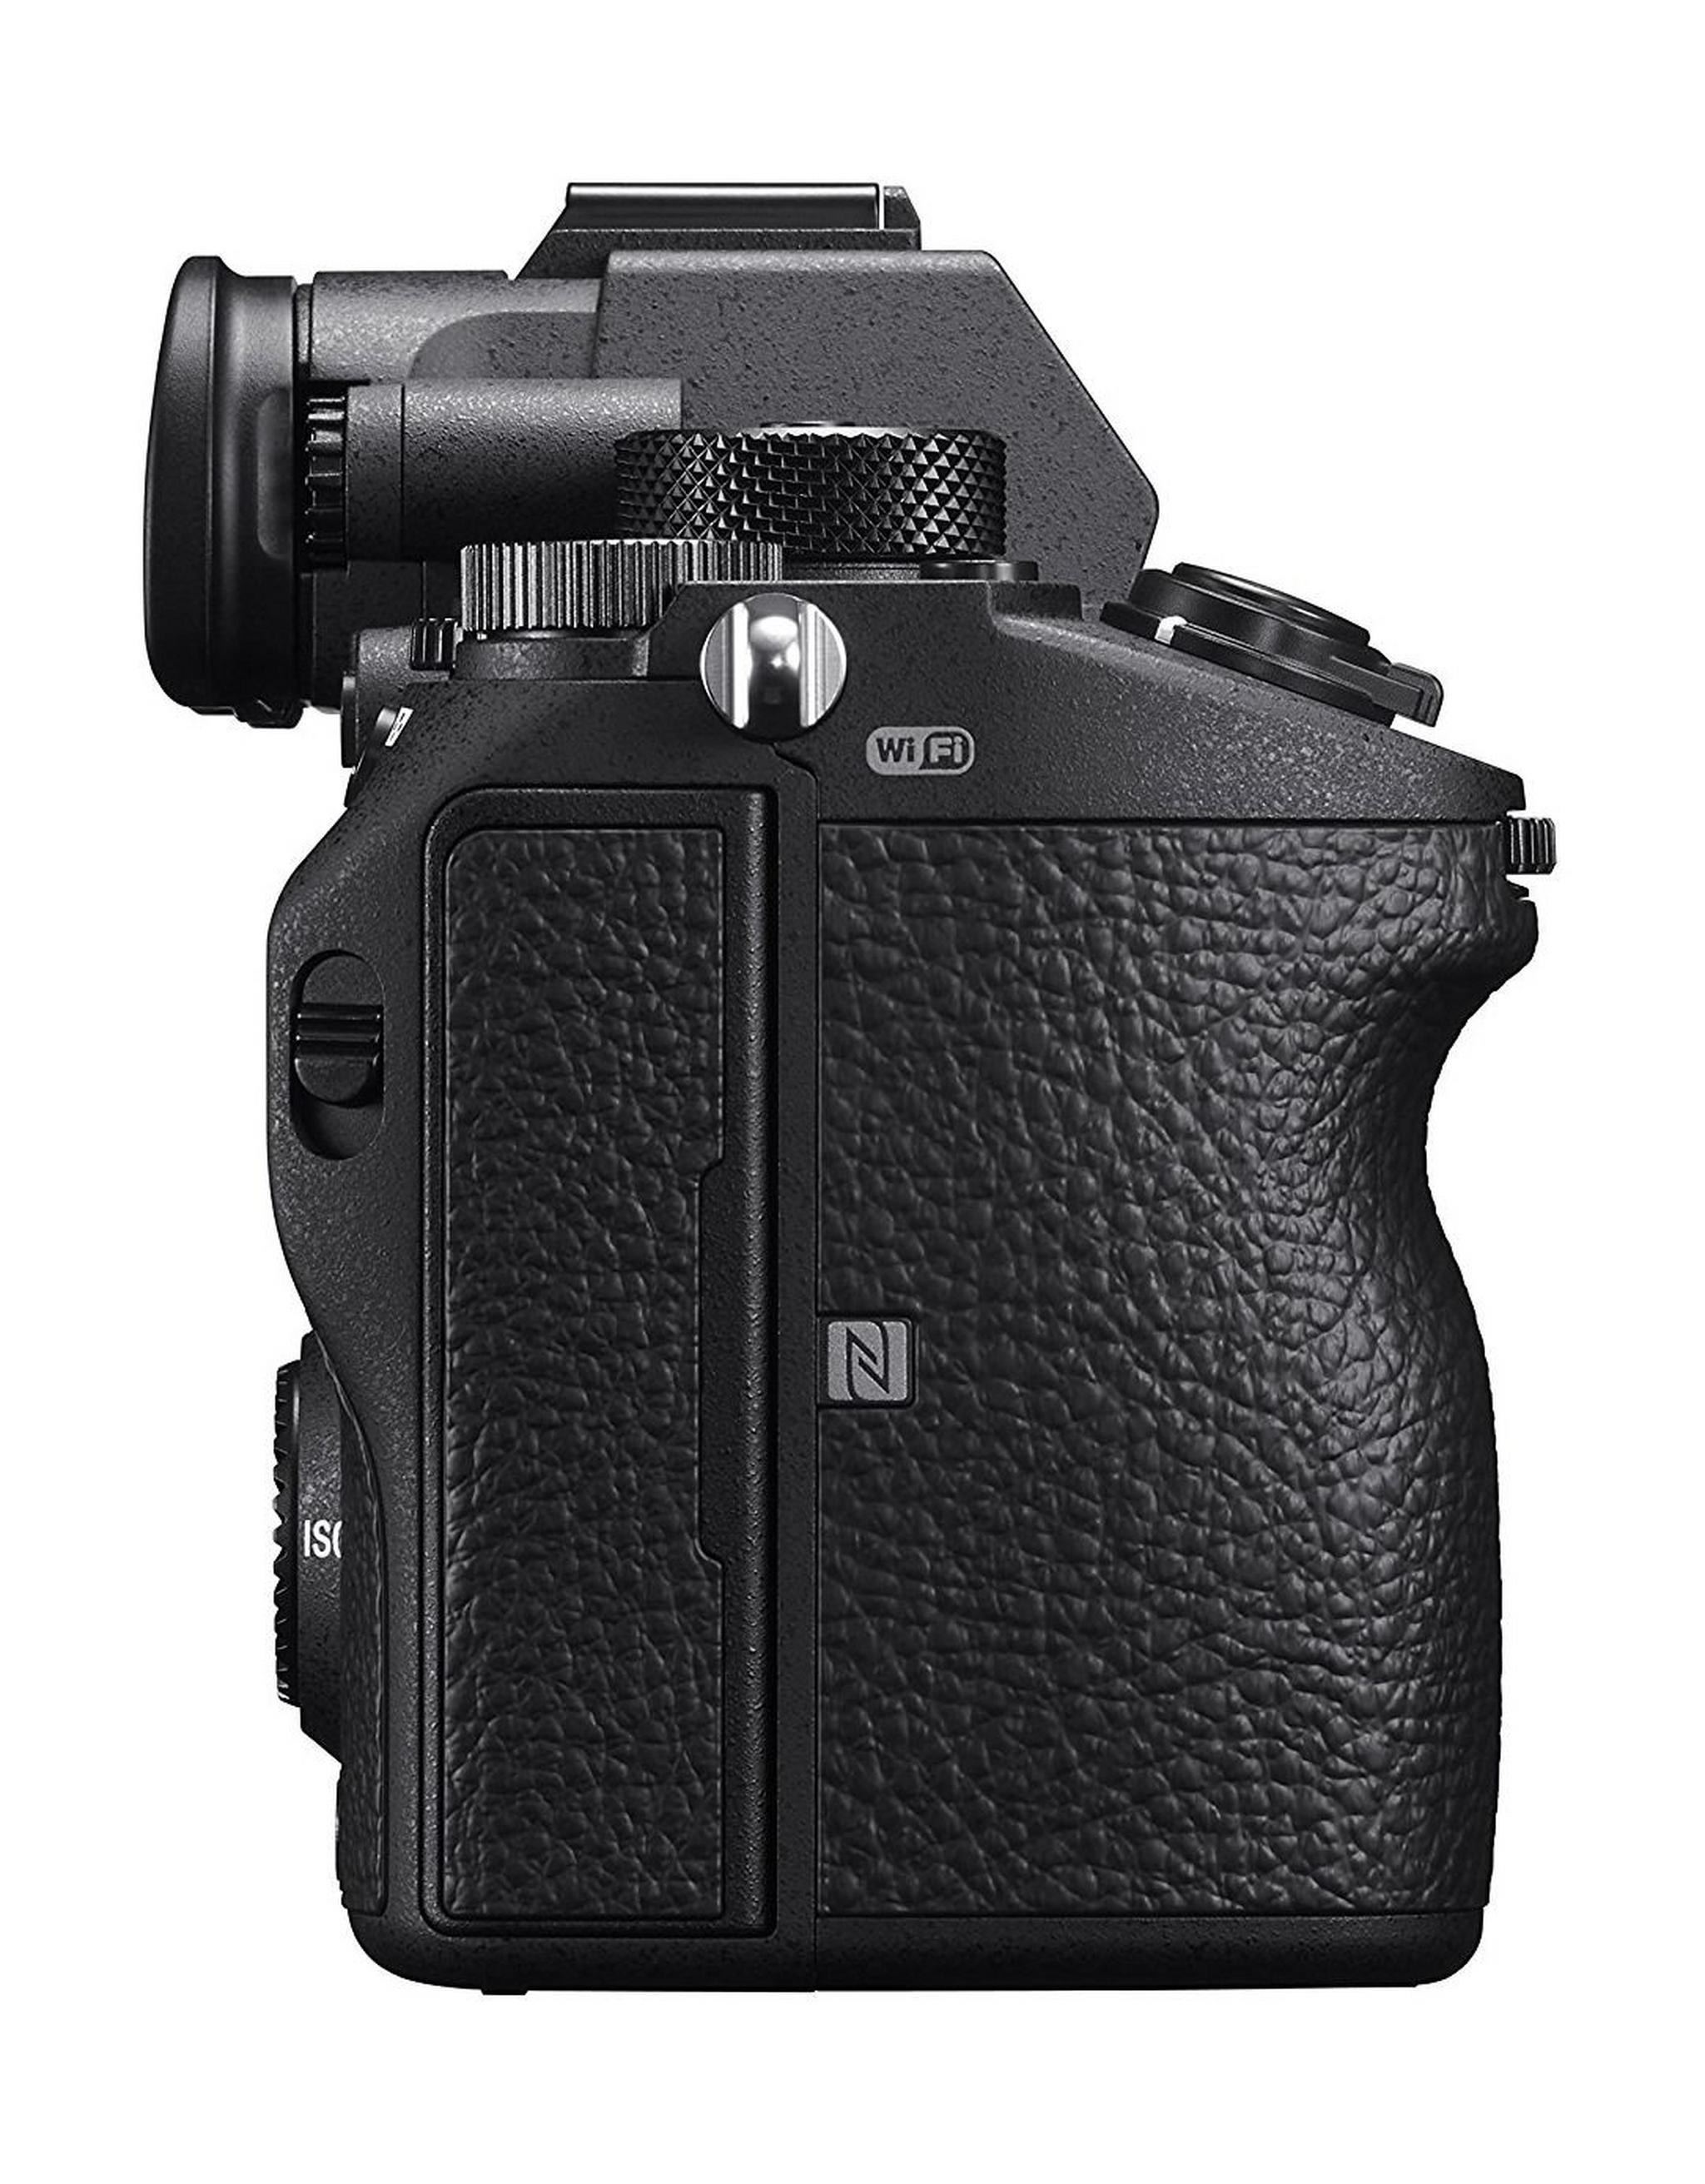 كاميرا سوني ألفا إيه ٧ آر ٣ الرقمية بدقة ٤٢ ميجابكسل بدون مرآة - اسود (الهيكل فقط)